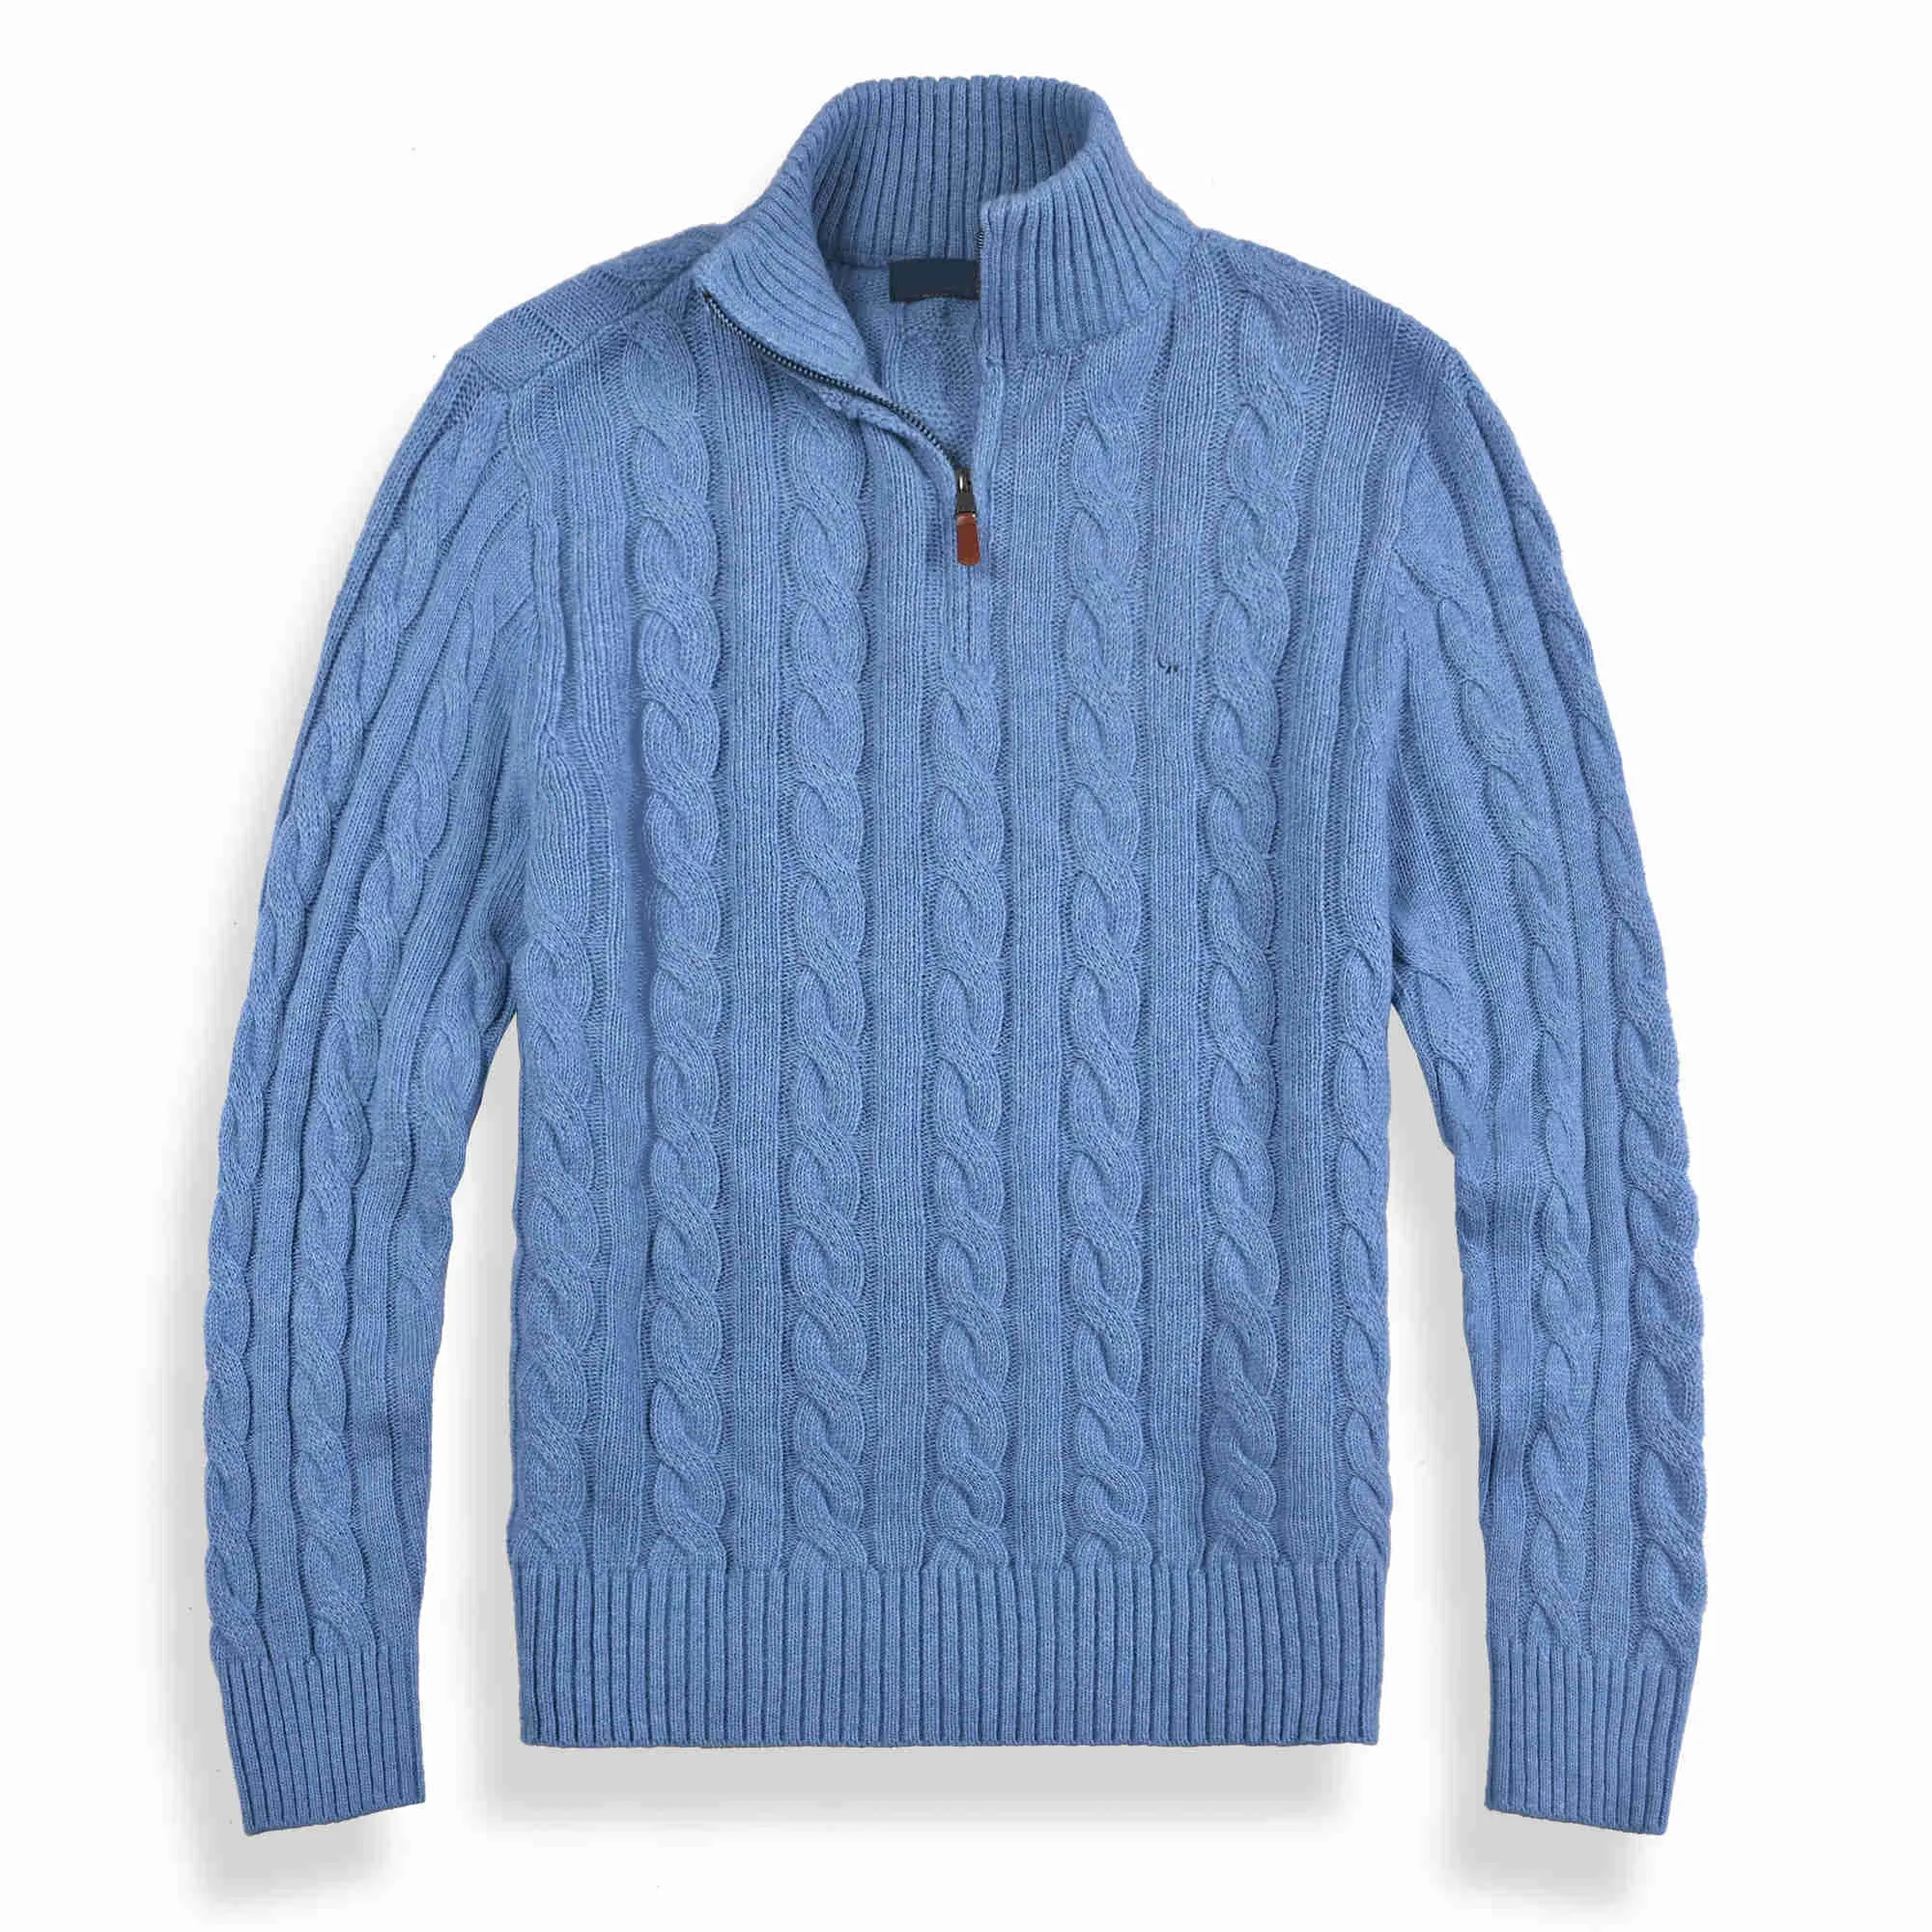 Suéter para hombre con cuello oblicuo, sudadera informal con cremallera de animales, jerséis largos, suéteres de invierno para jóvenes